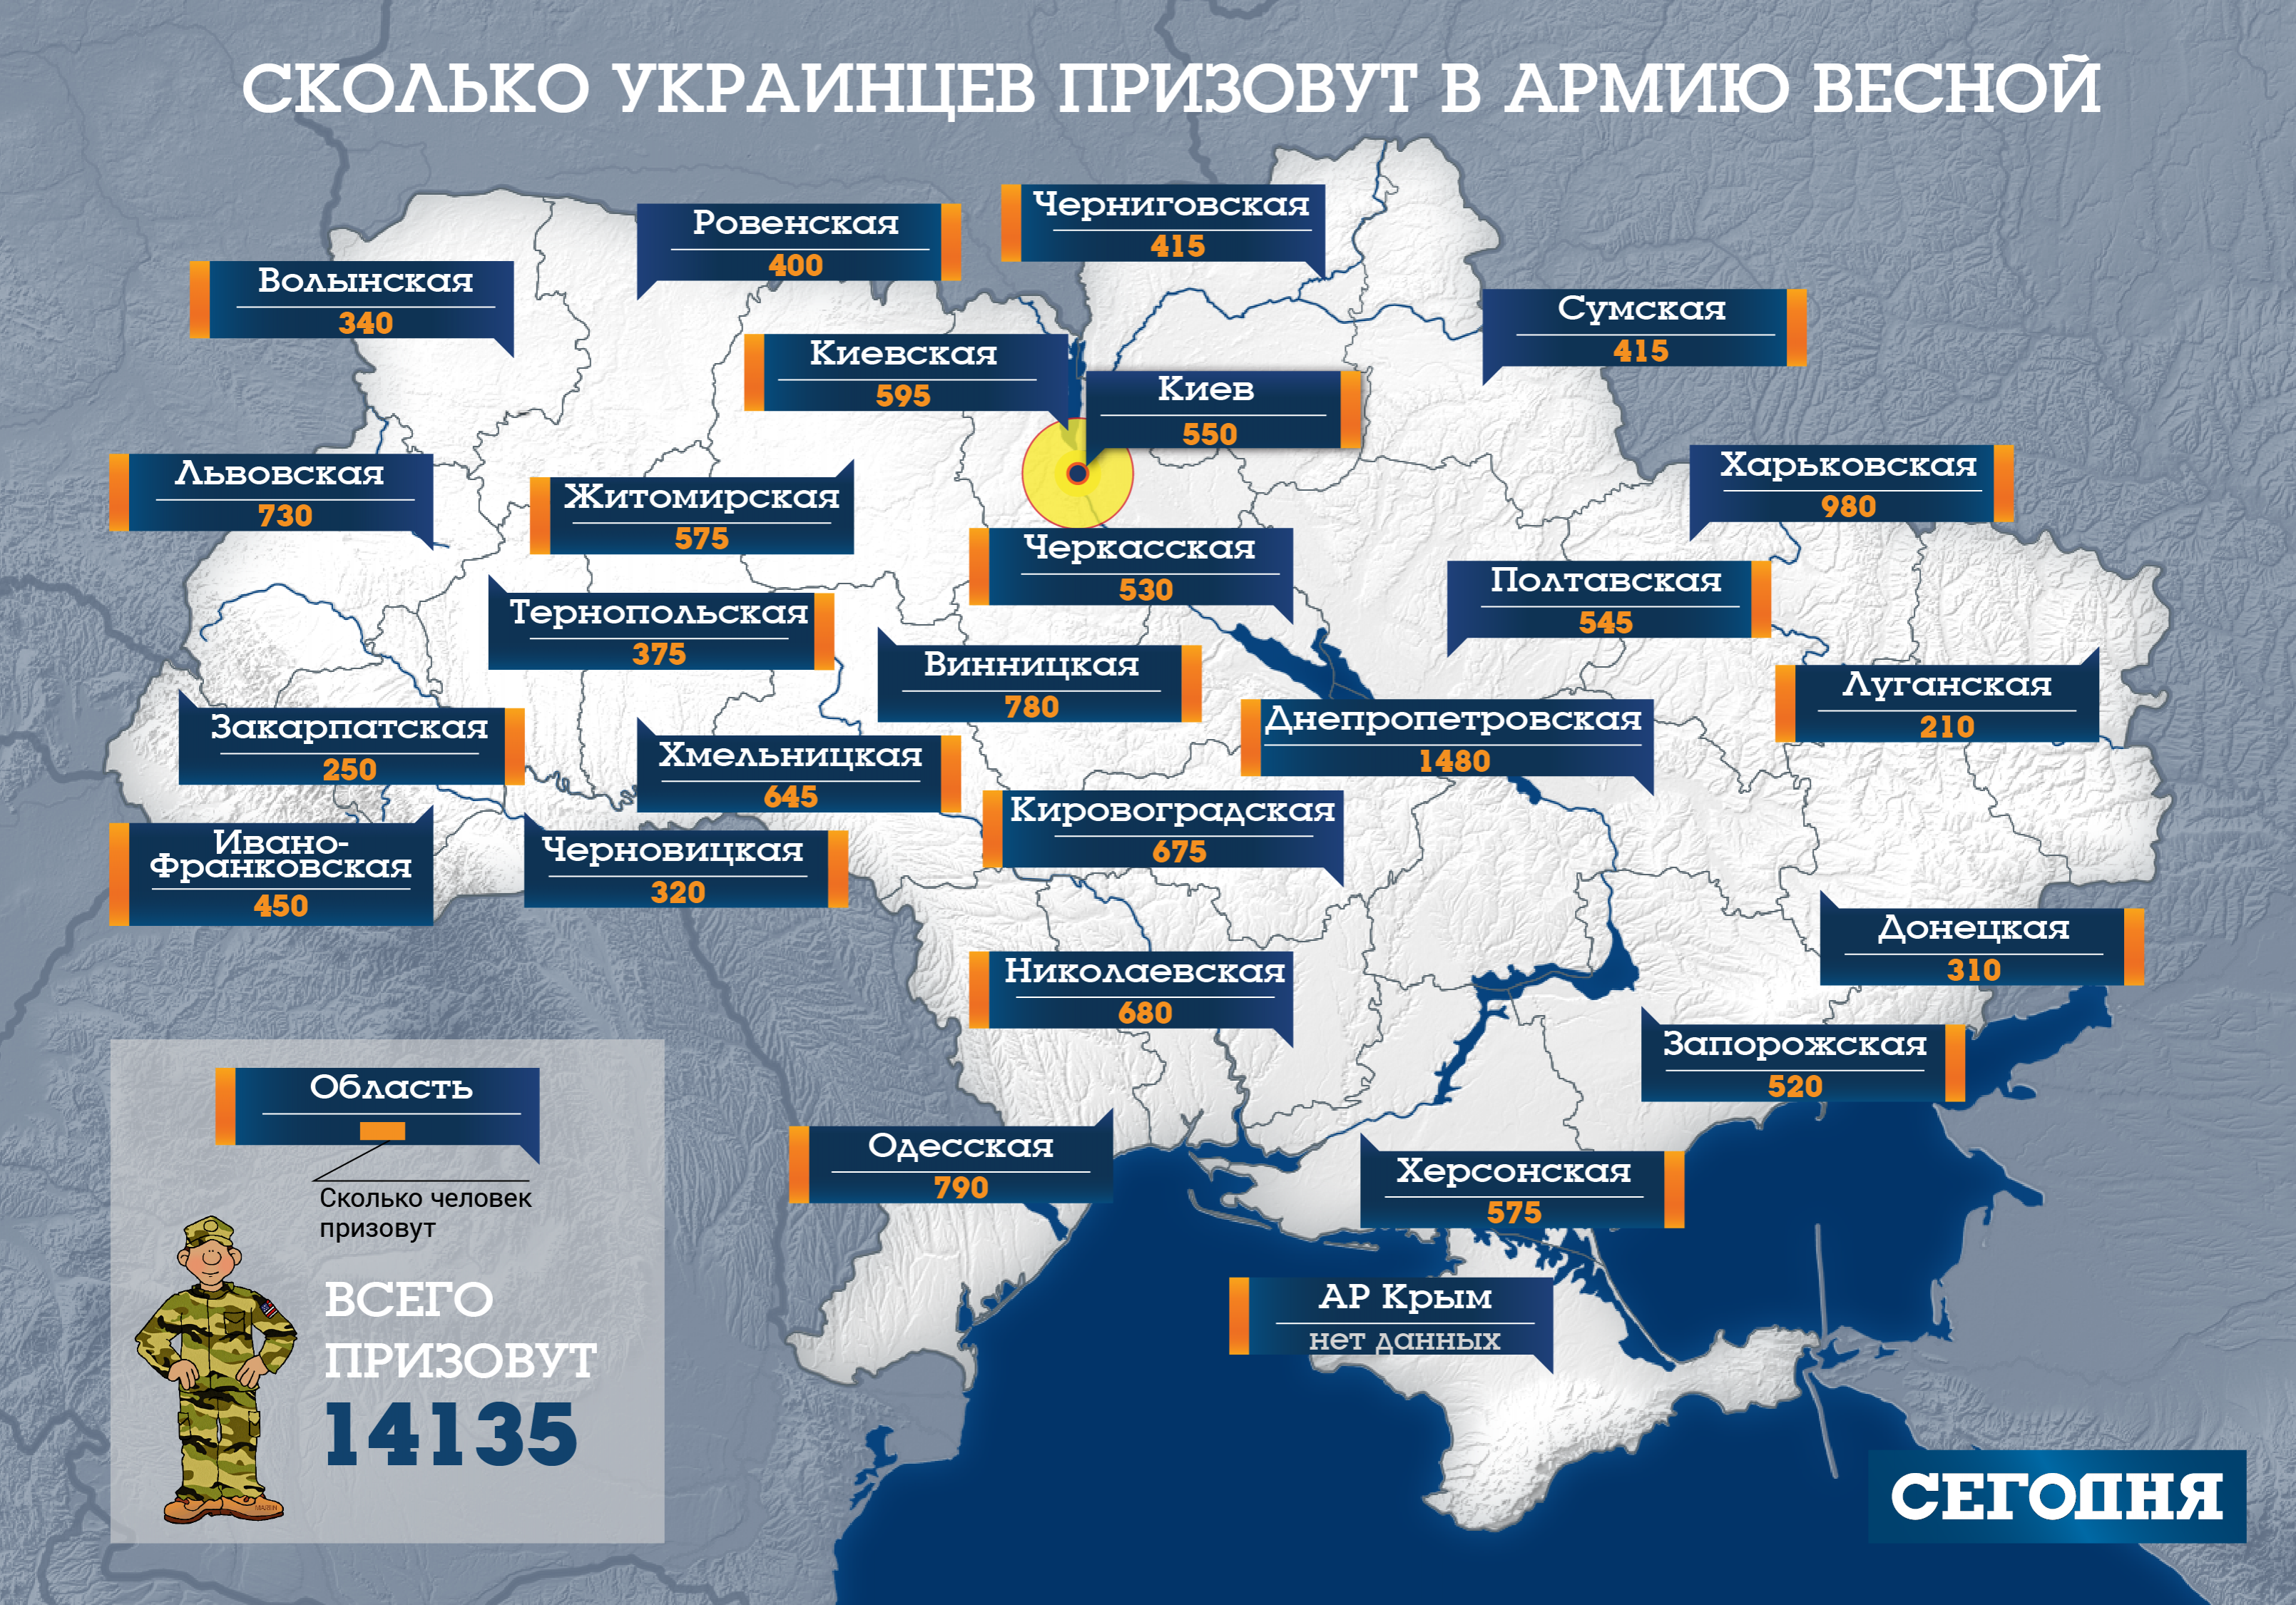 Найбільше - в Дніпропетровській області (1480 осіб), а найменше в Луганській - 210 юнаків